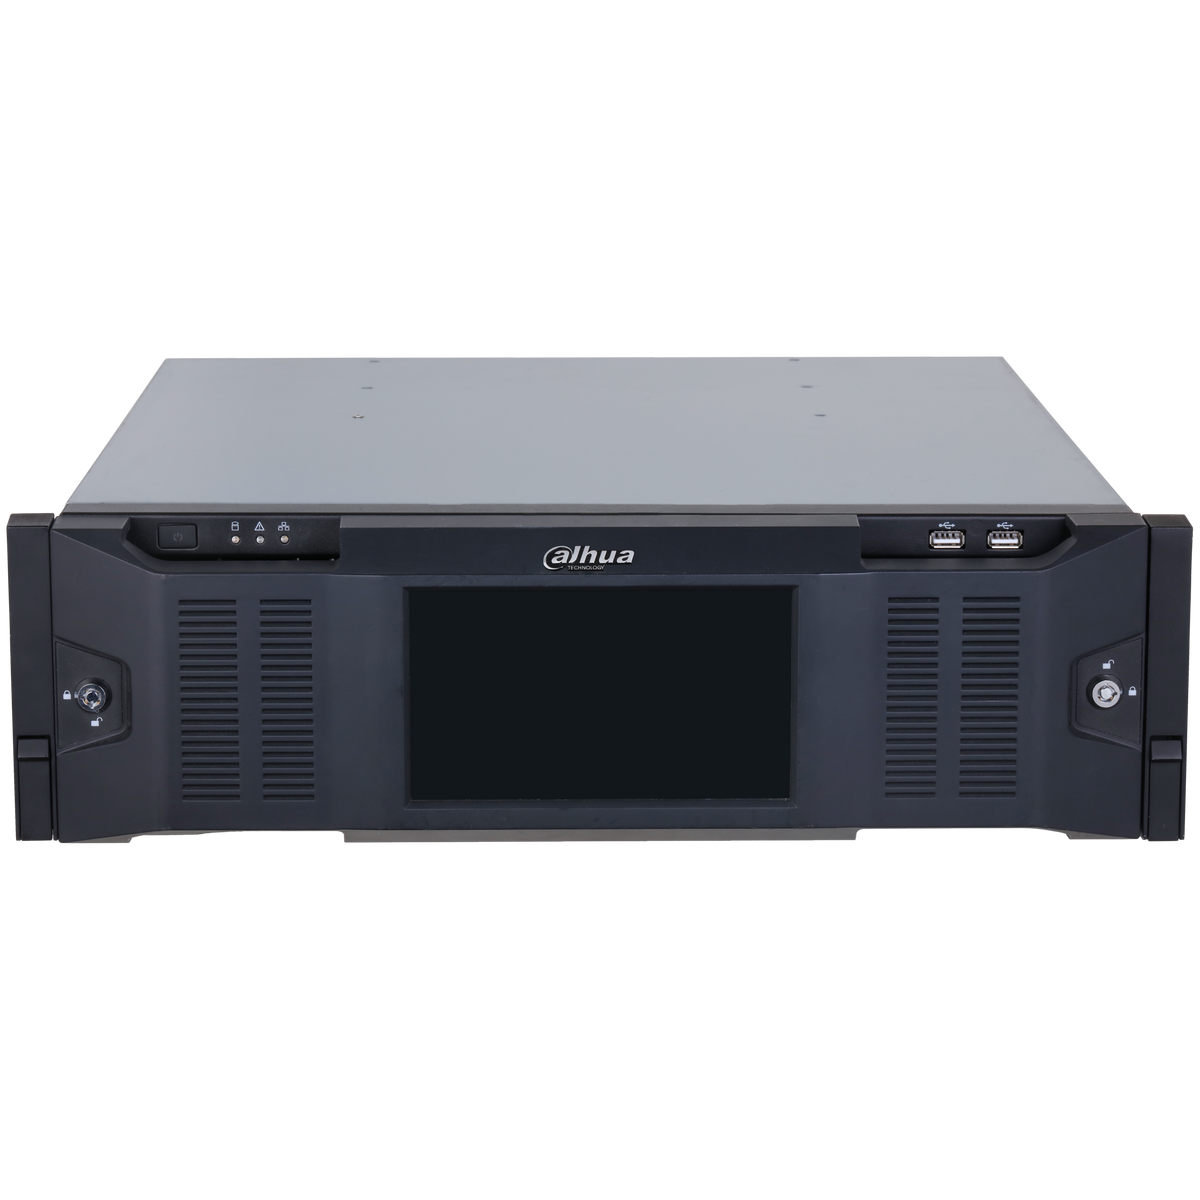 DAHUA IVSS7116DR-8I 256CH 3U Intelligent Video Surveillance Server